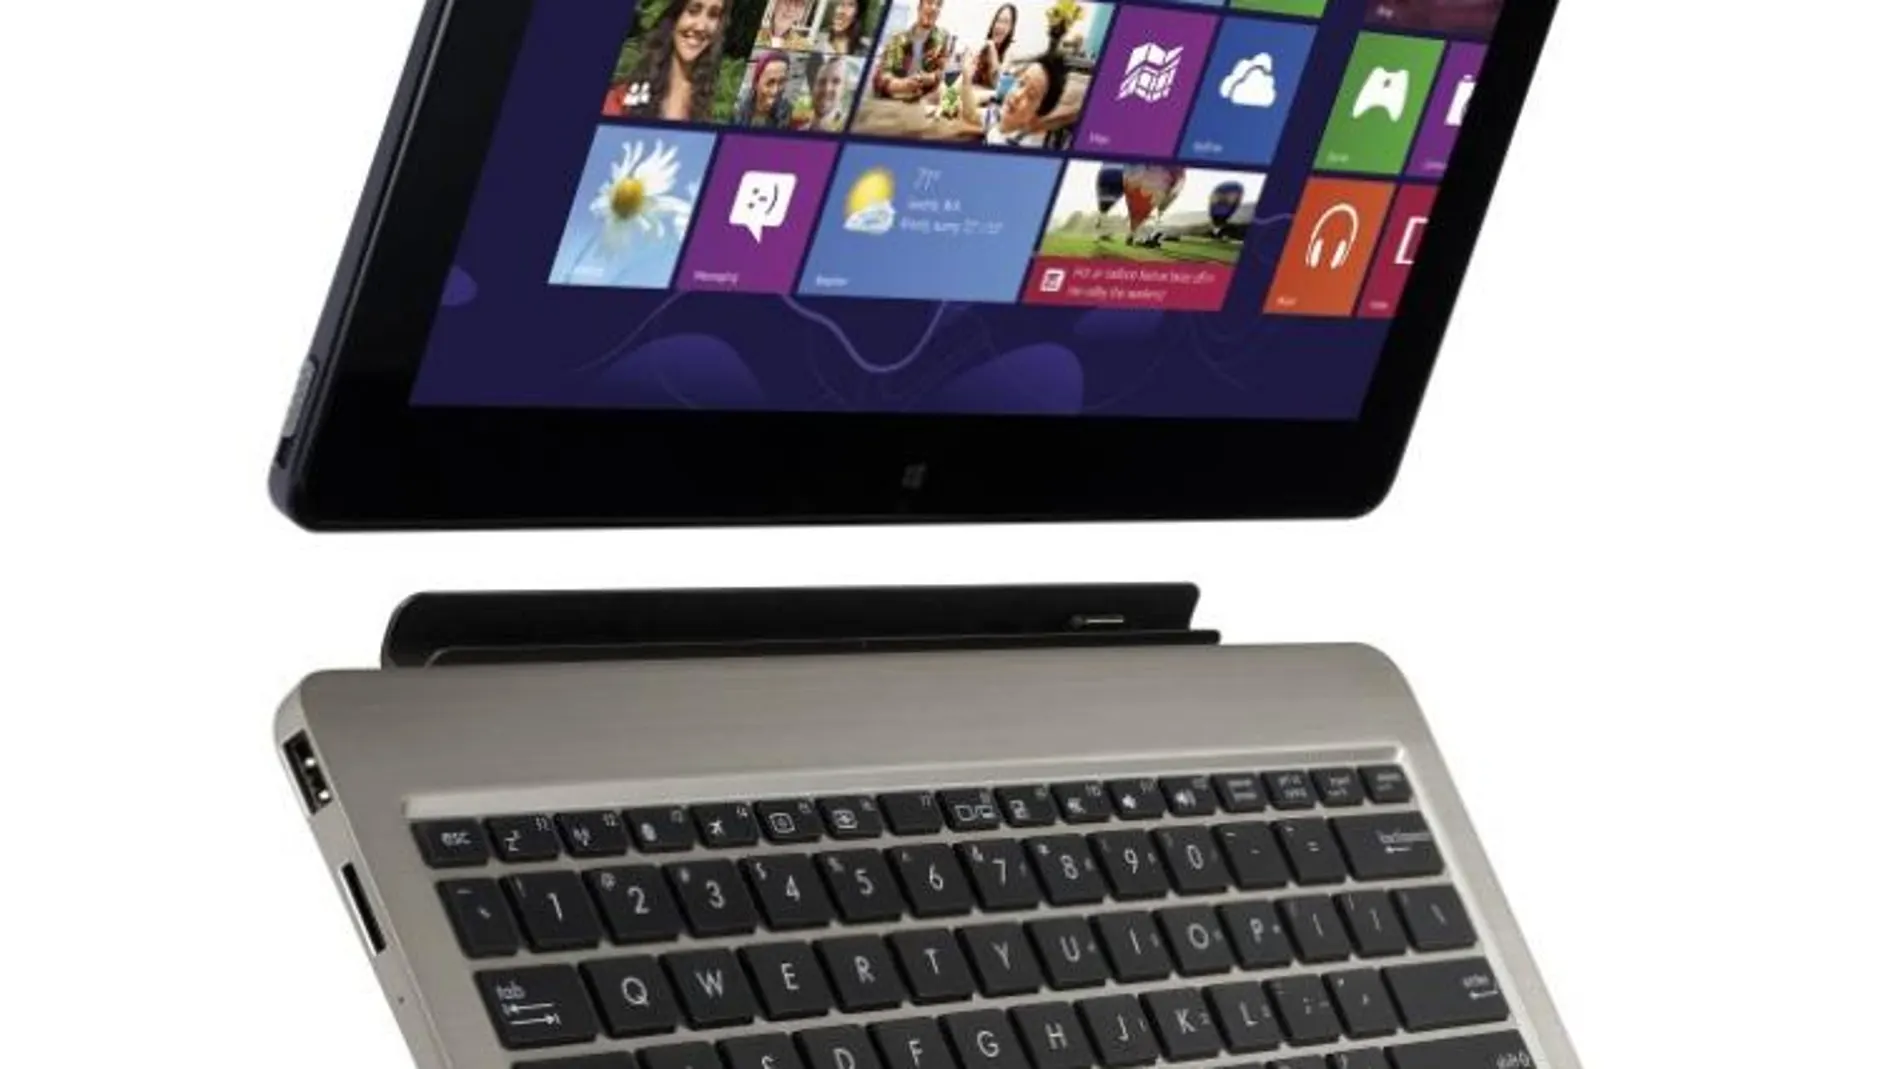 Tablet + teclado = Windows 8